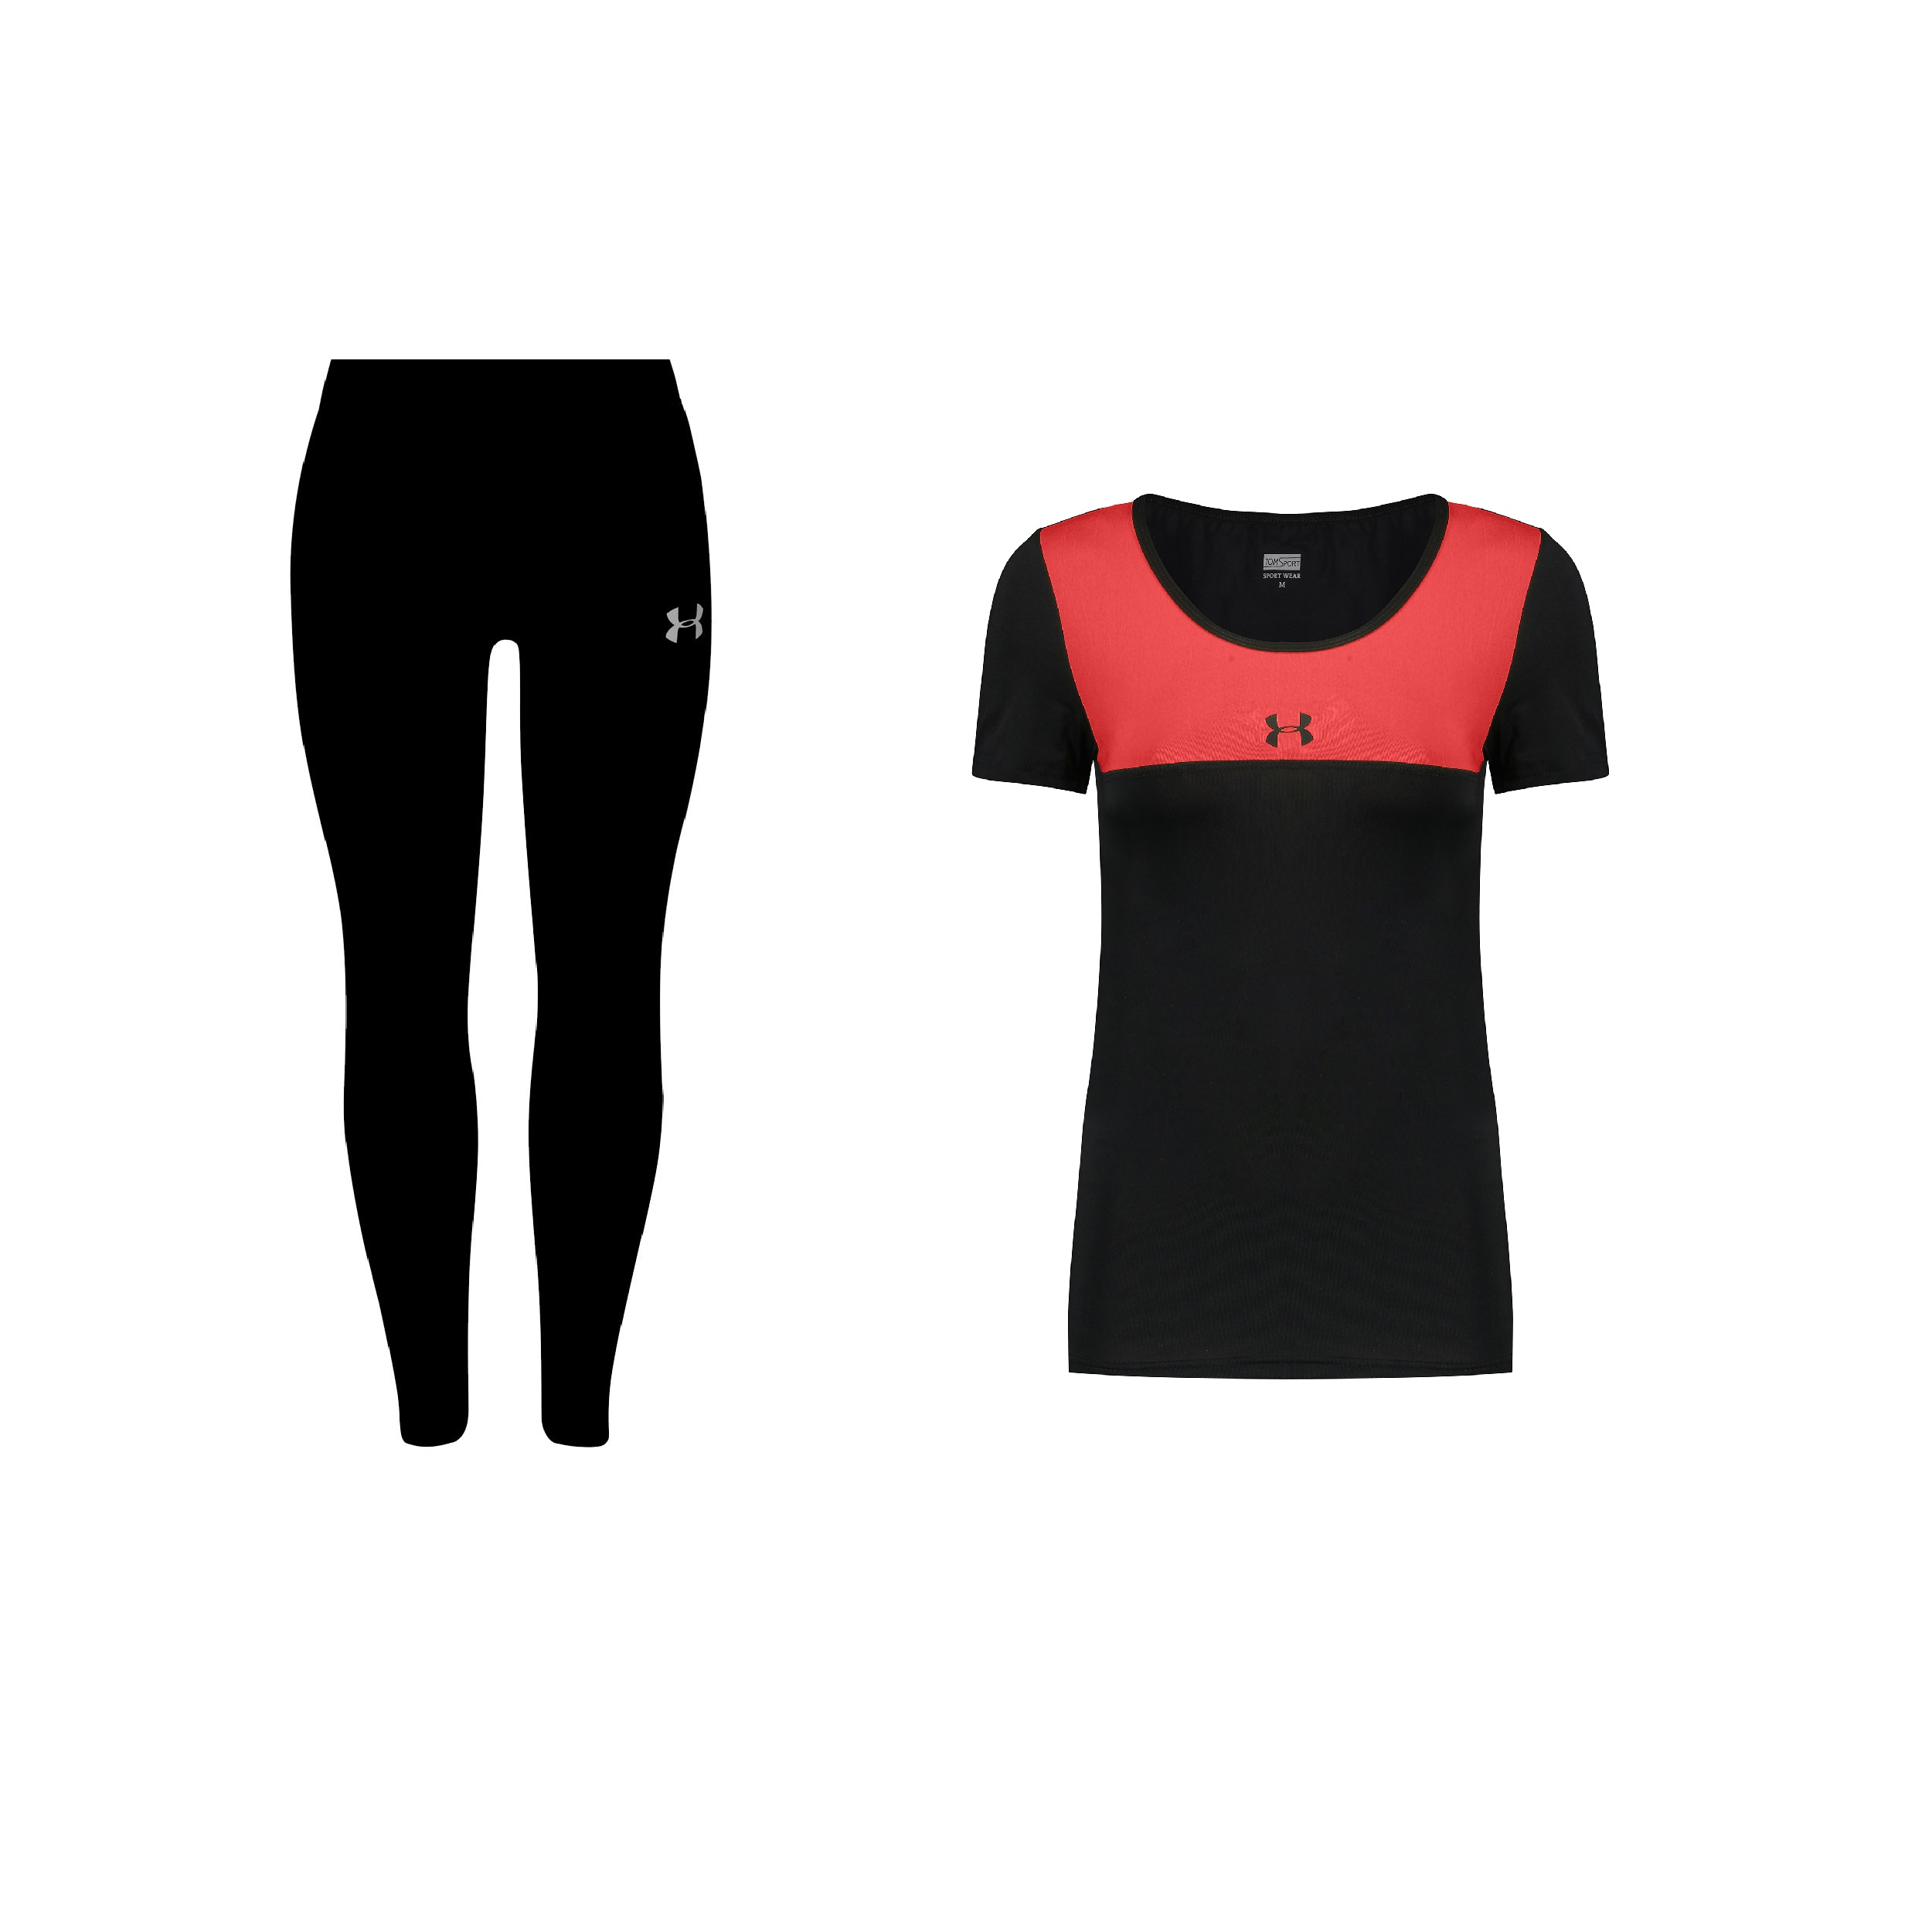 ست تی شرت و لگینگ ورزشی زنانه مدل 4101-7102